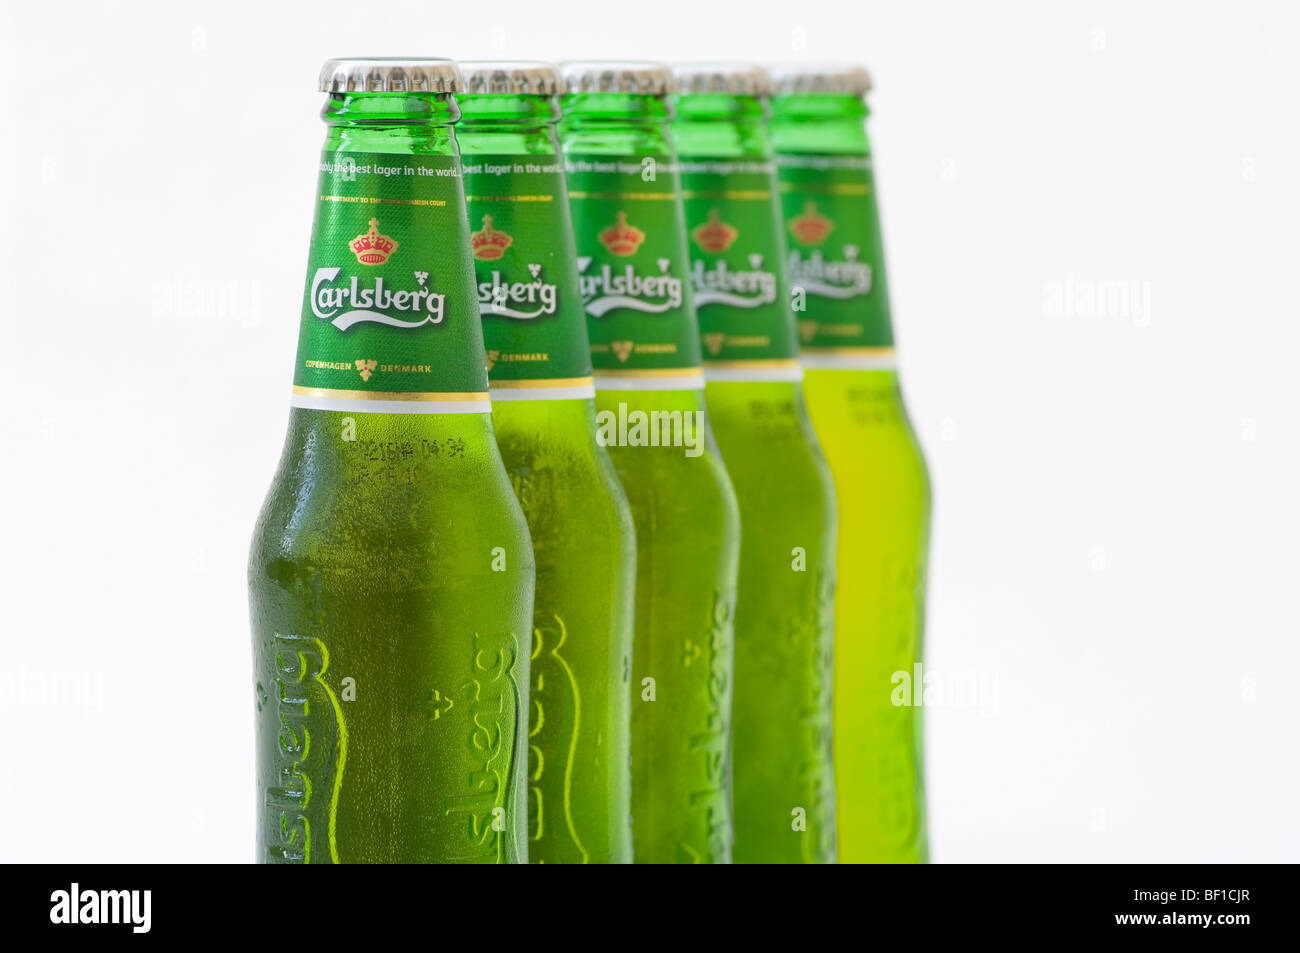 Carlsberg Beer Stockfotos und -bilder Kaufen - Alamy